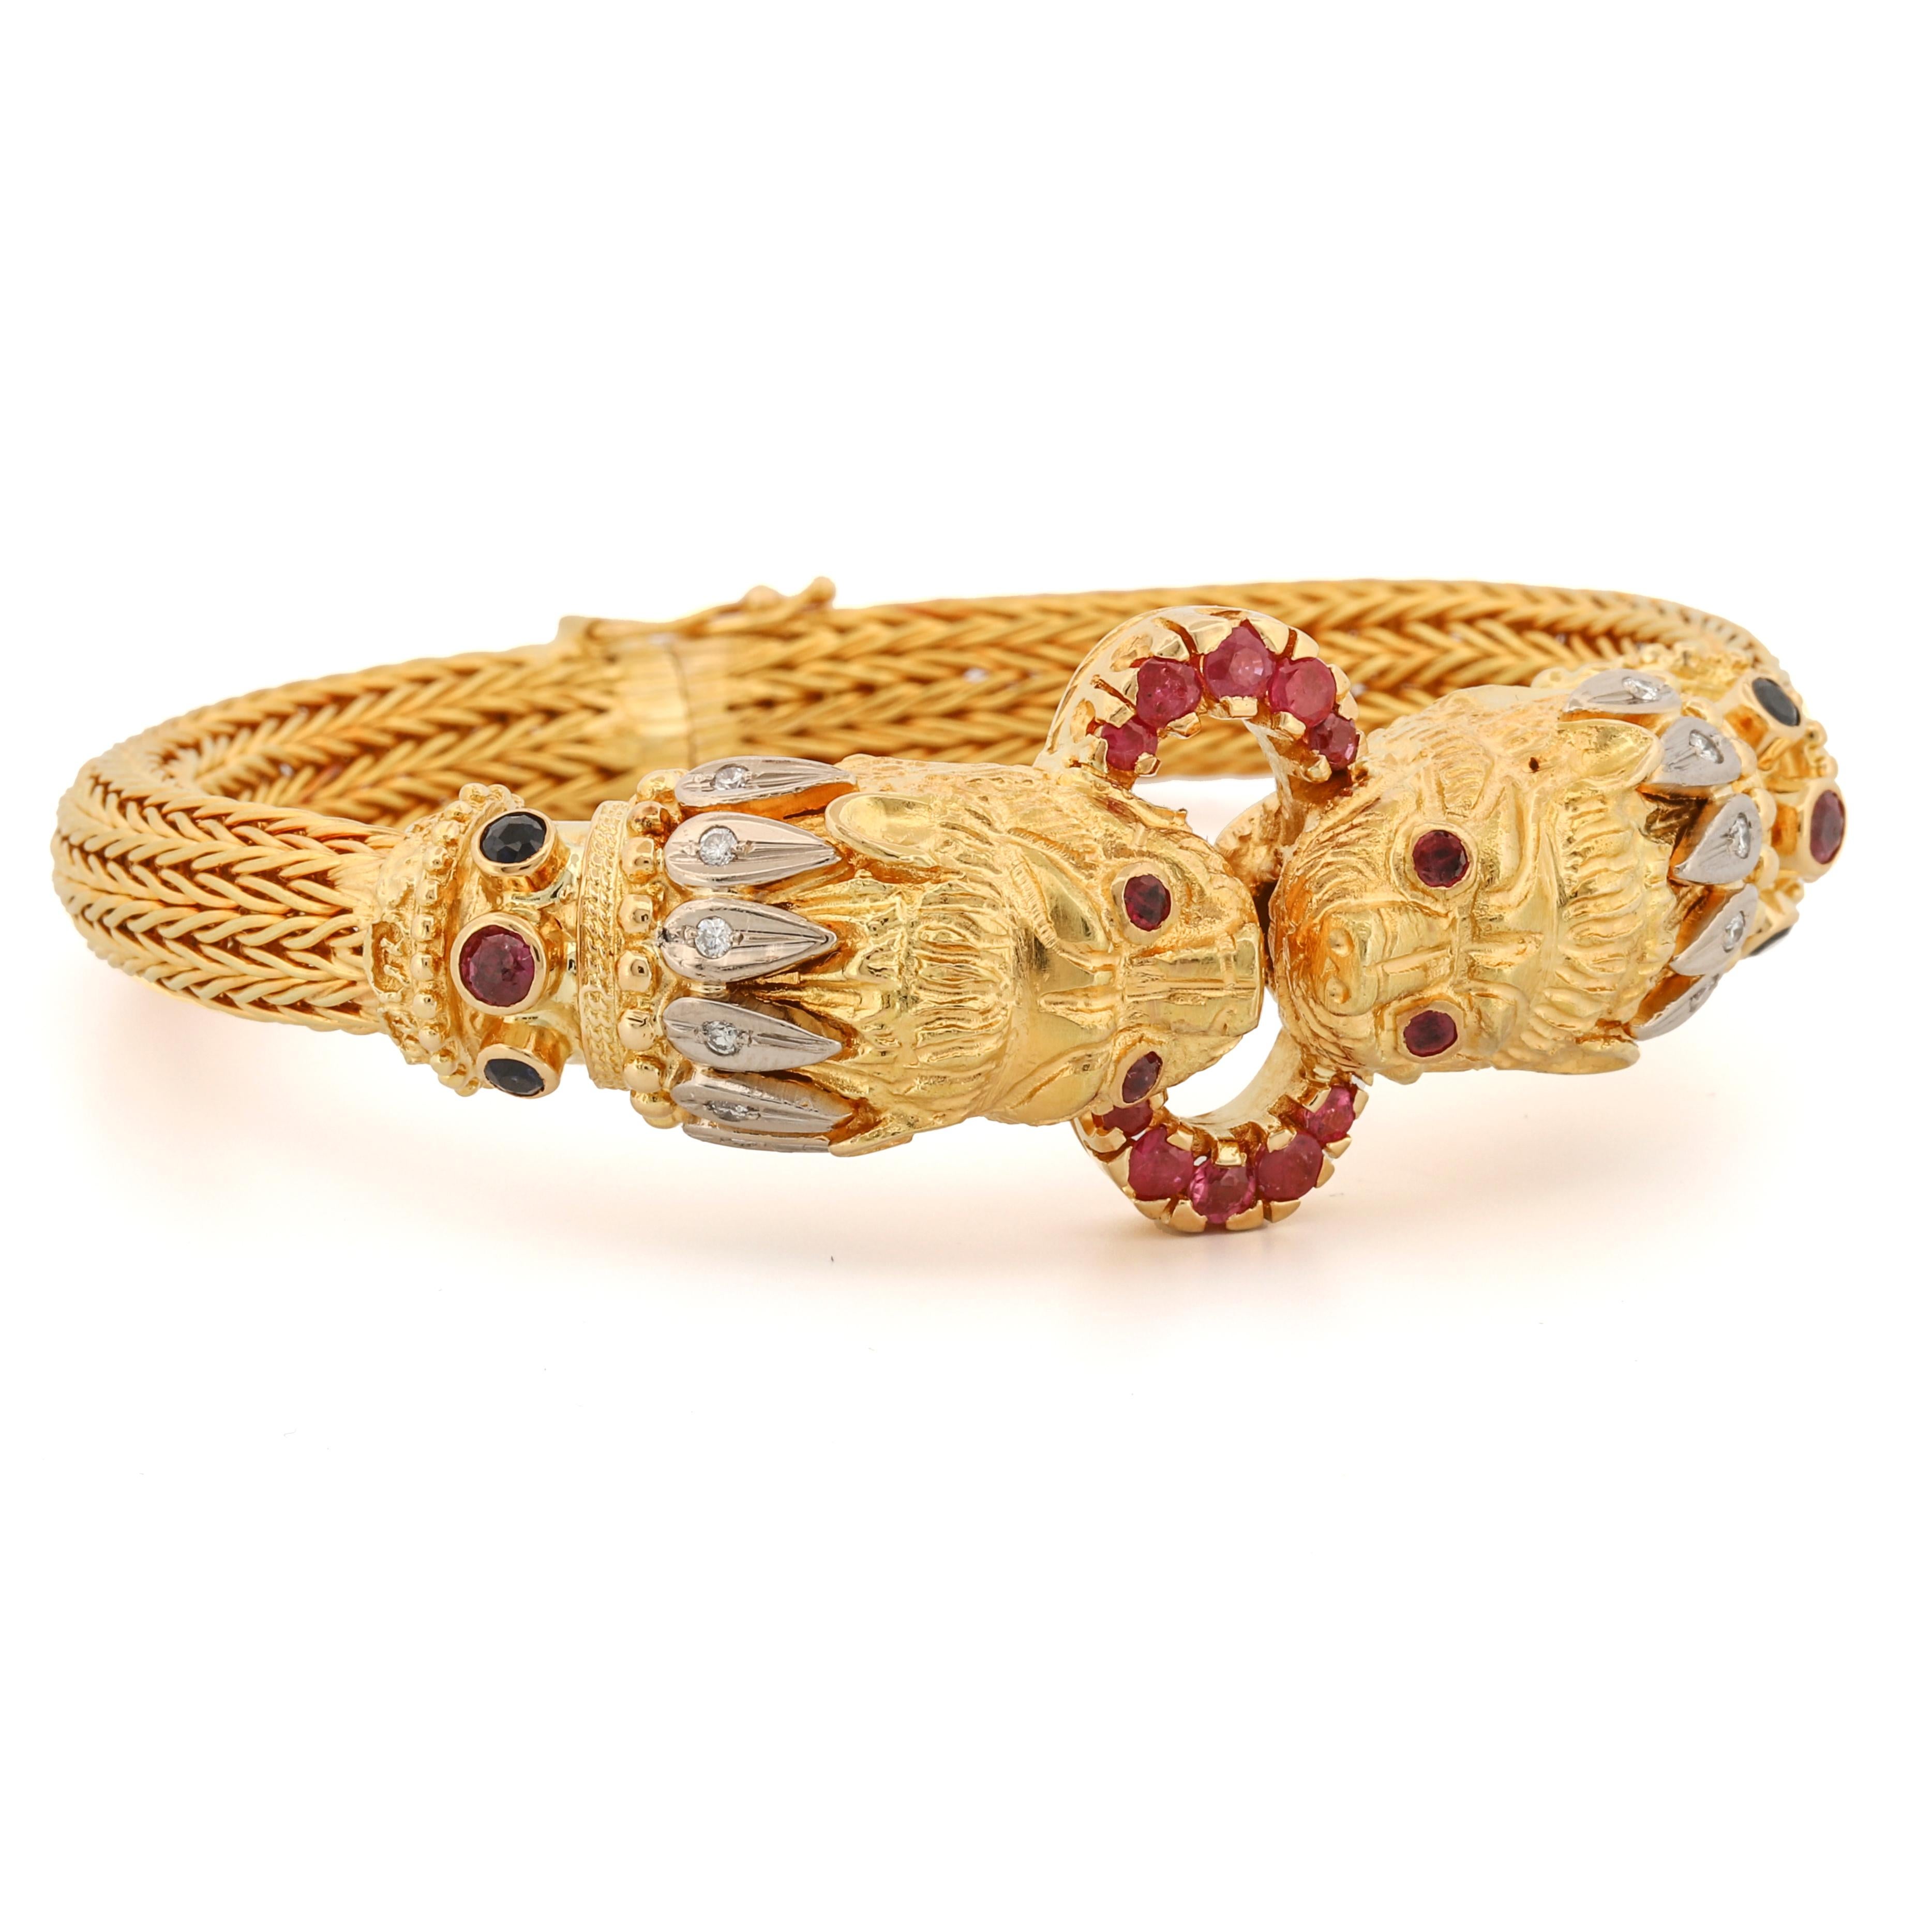 Rehaussez votre collection de bijoux avec l'exquis bracelet à double tête de lion de Lalaounis. Fabriqué à la main en Grèce, ce chef-d'œuvre en or 18 carats présente un design mythologique unique et audacieux. Cette pièce est une véritable